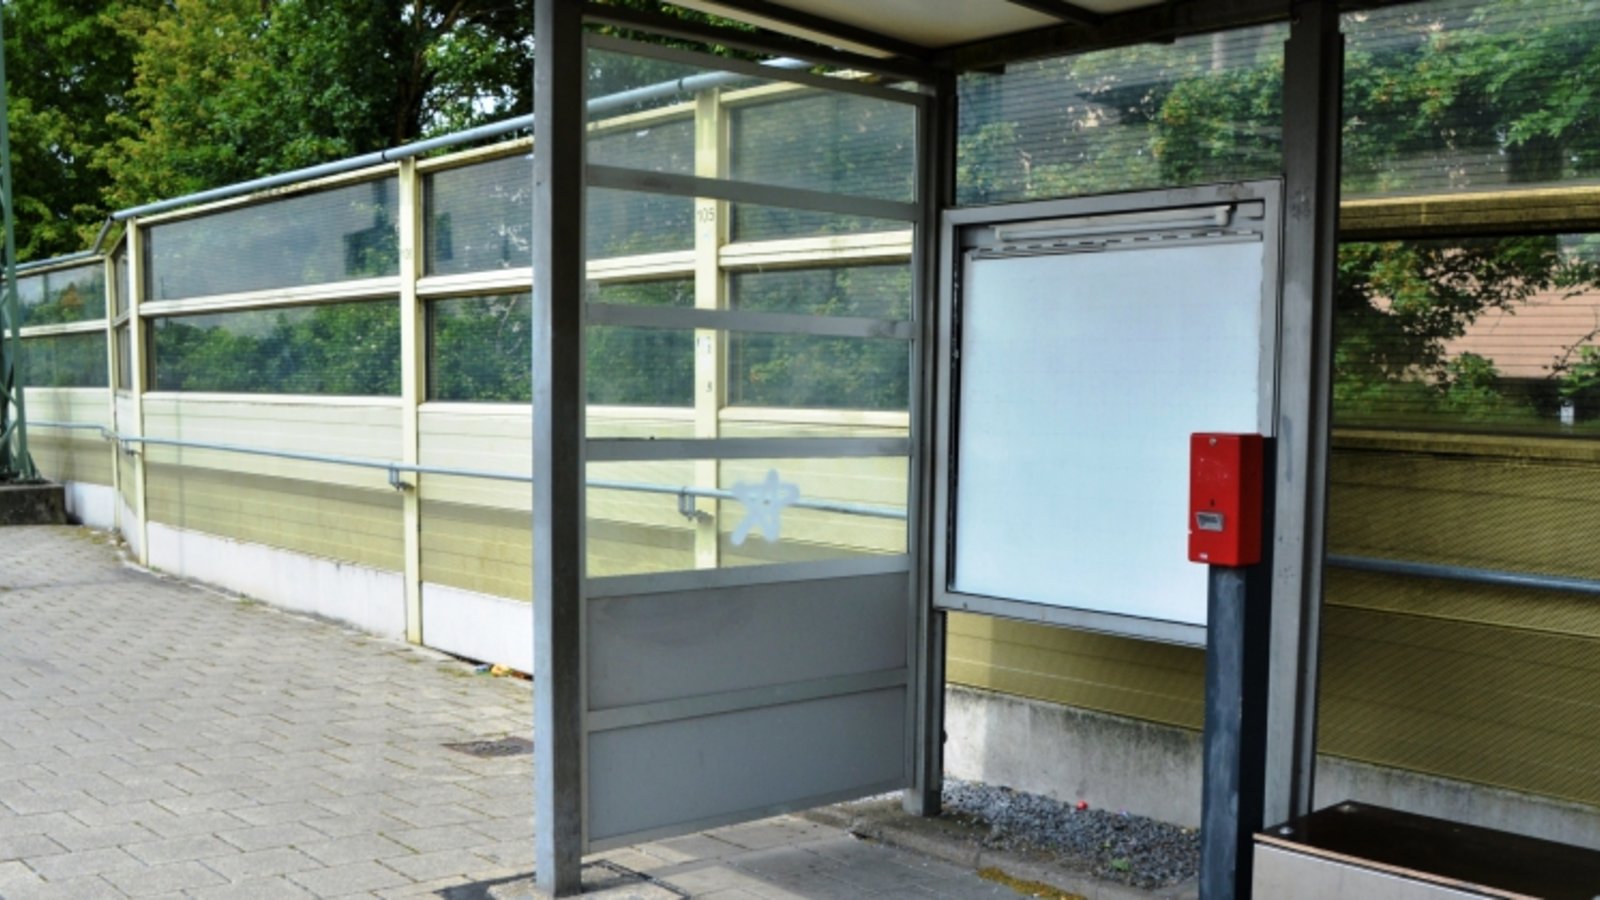 Bahnhof Illingen abgebauter Fahrkartenautomat Verkehr ÖPNV